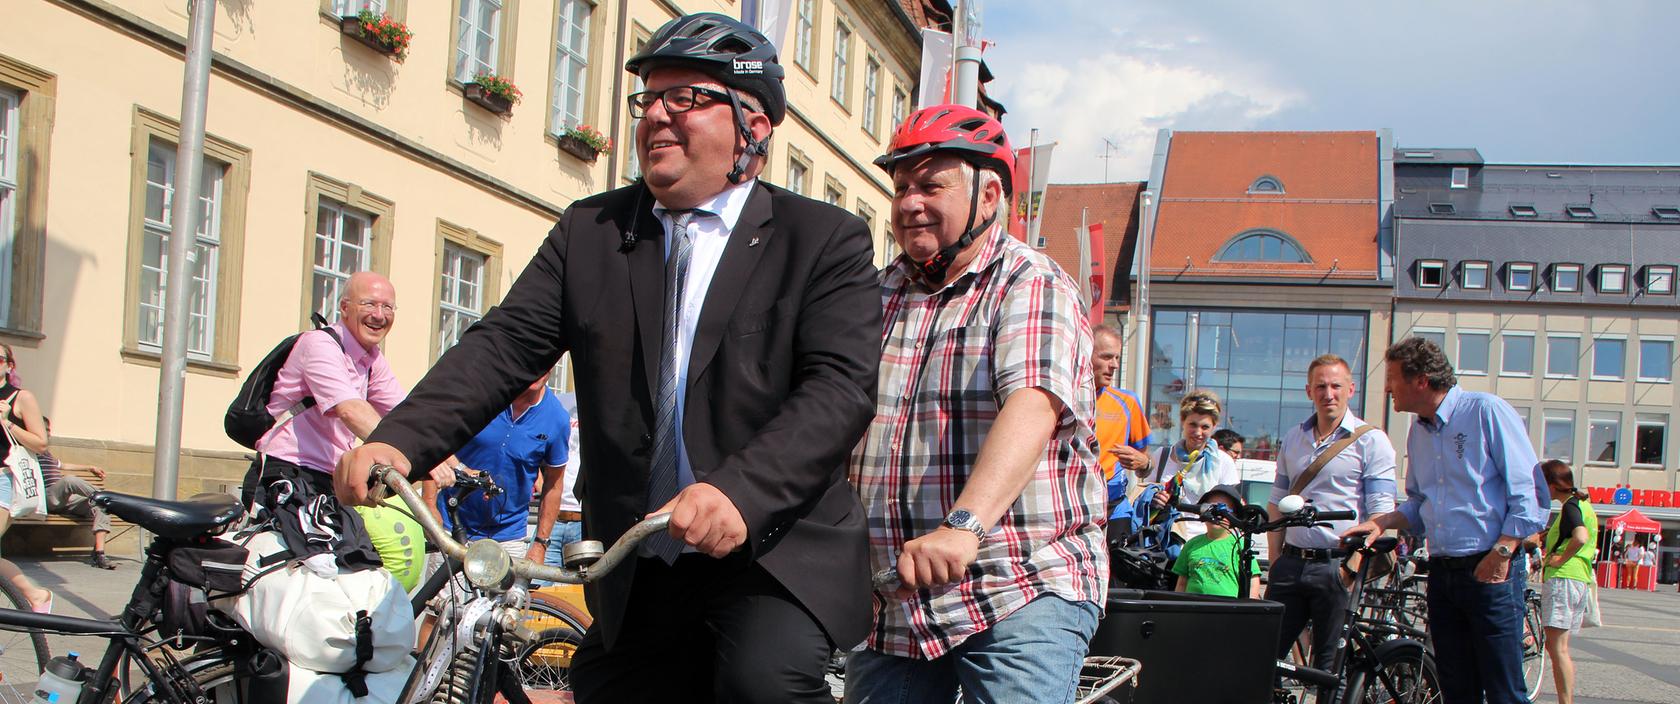 Bürgermeister und Stadtradelstar Wolfgang Metzner sattelte zusammen mit stellvertretendem Landrat Johann Pfister zum Beginn der Stadtradeln-Kampagne ein altes Tandem.